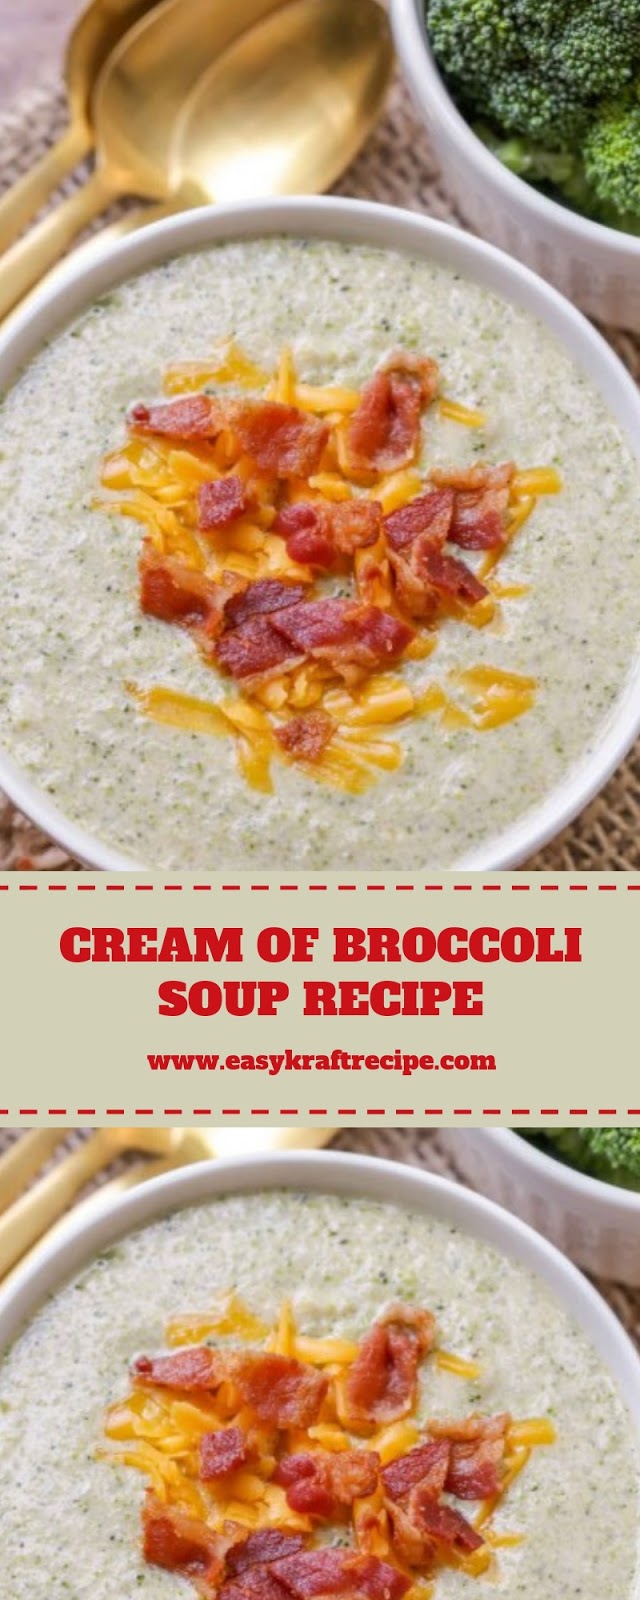 CREAM OF BROCCOLI SOUP RECIPE